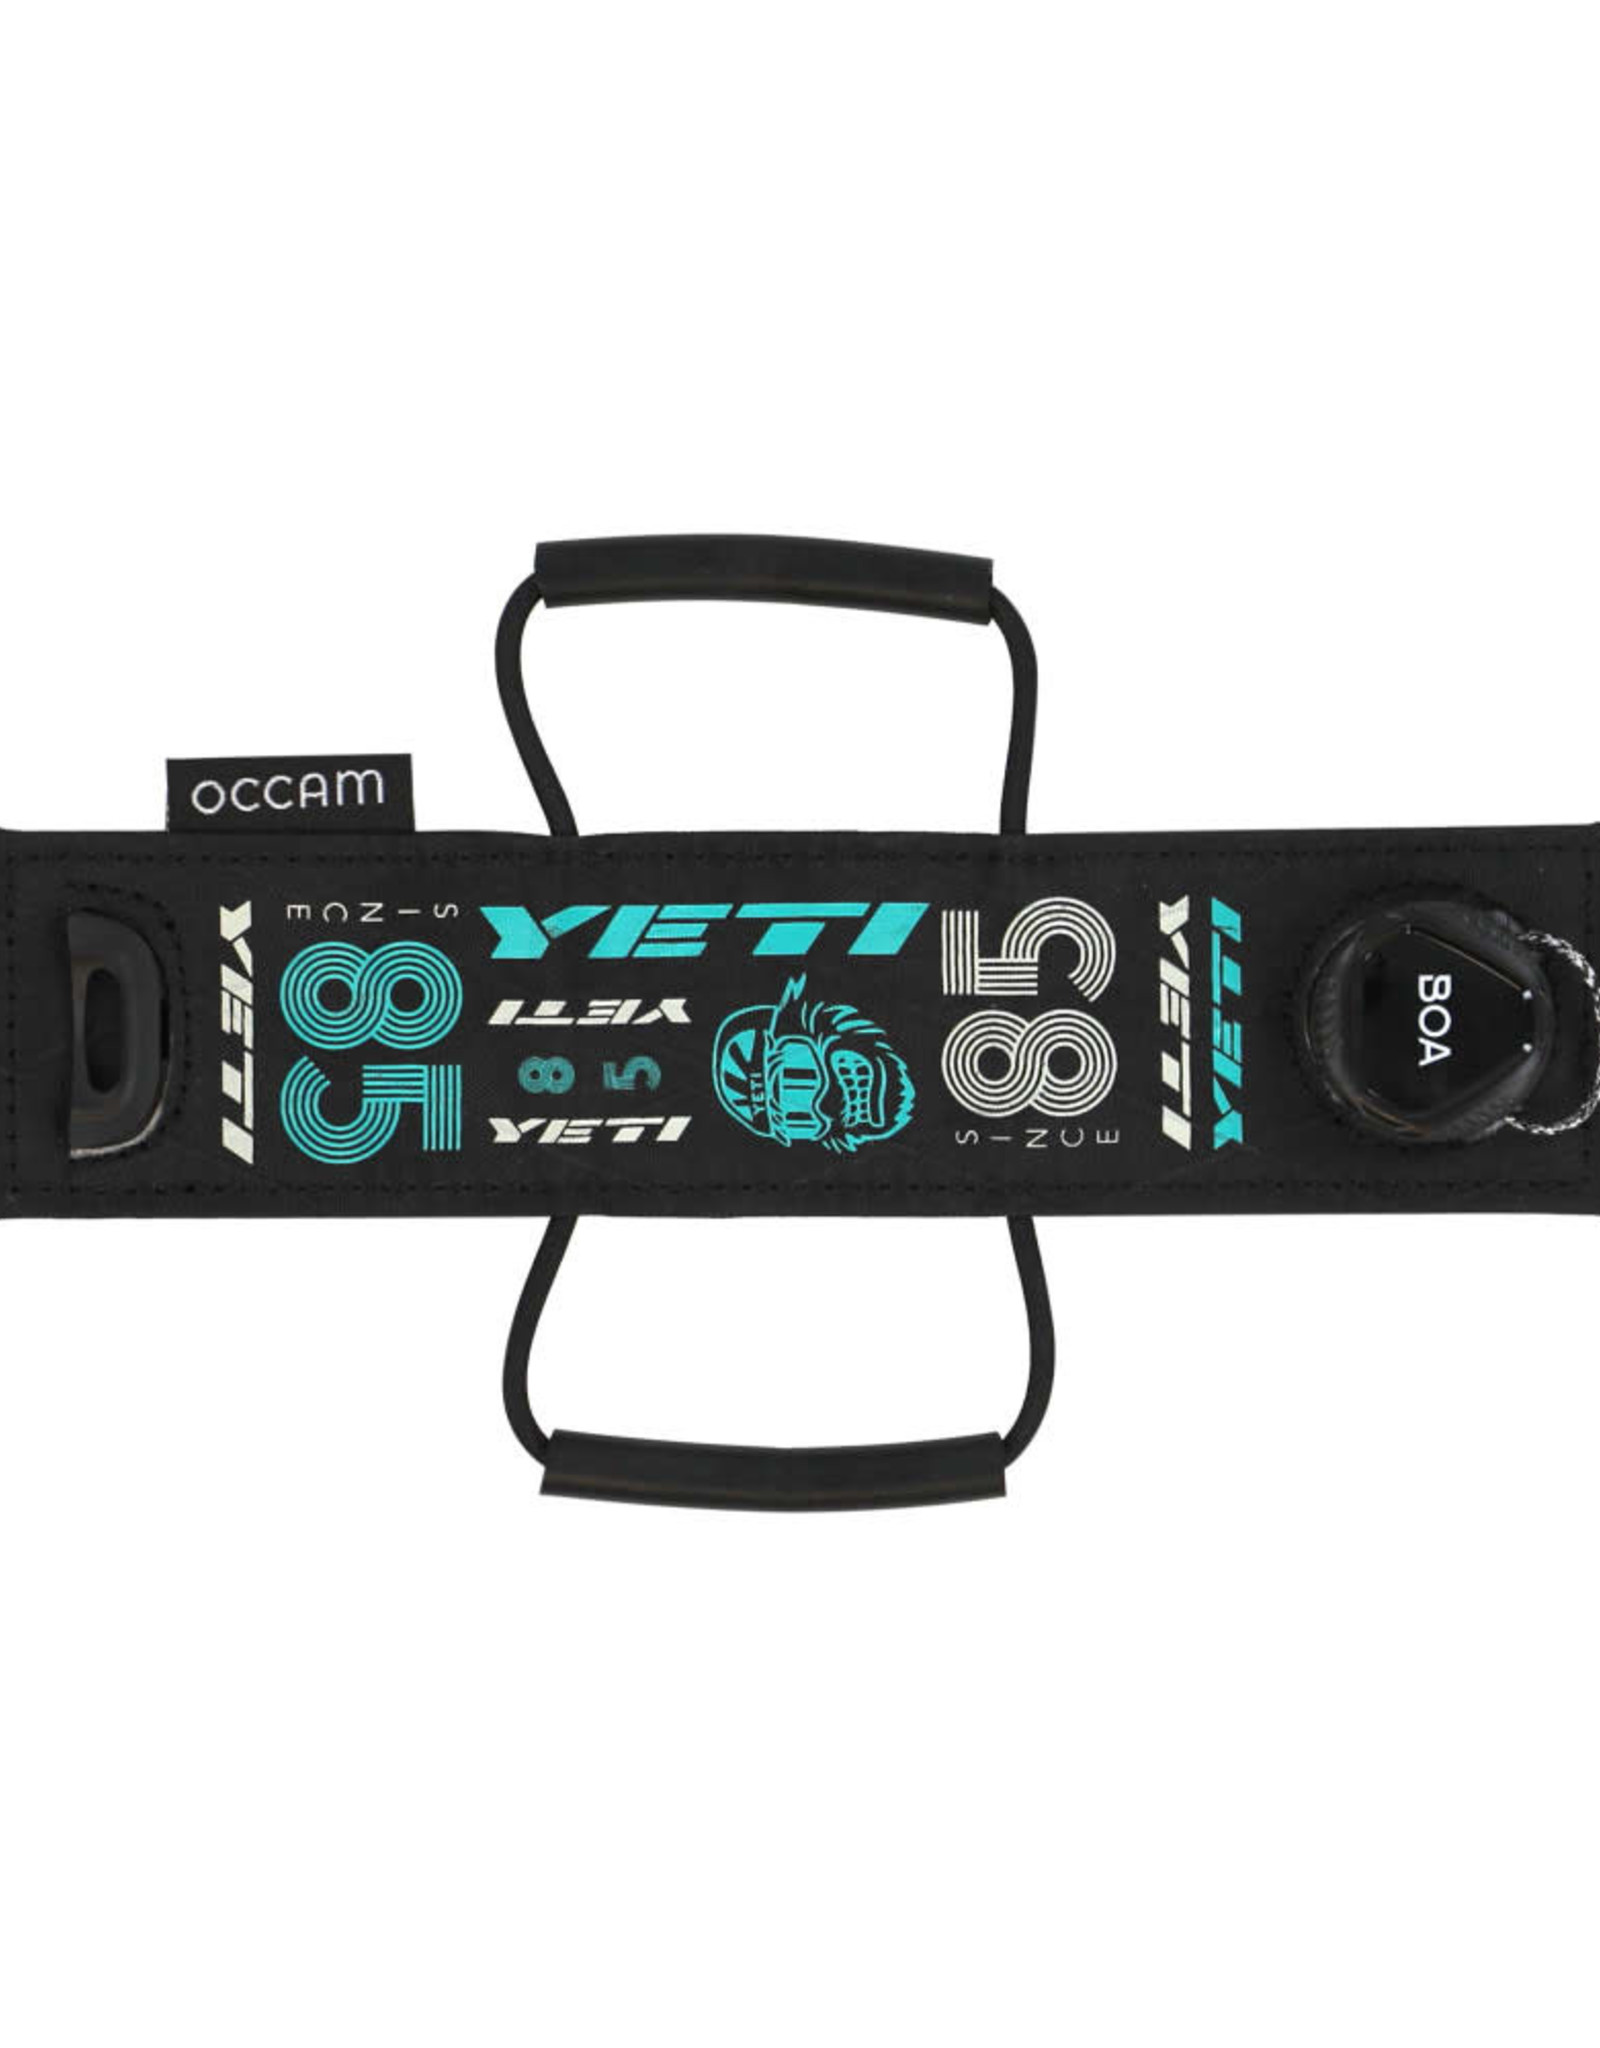 OCCAM Designs Occam Apex Frame Strap - BOA System